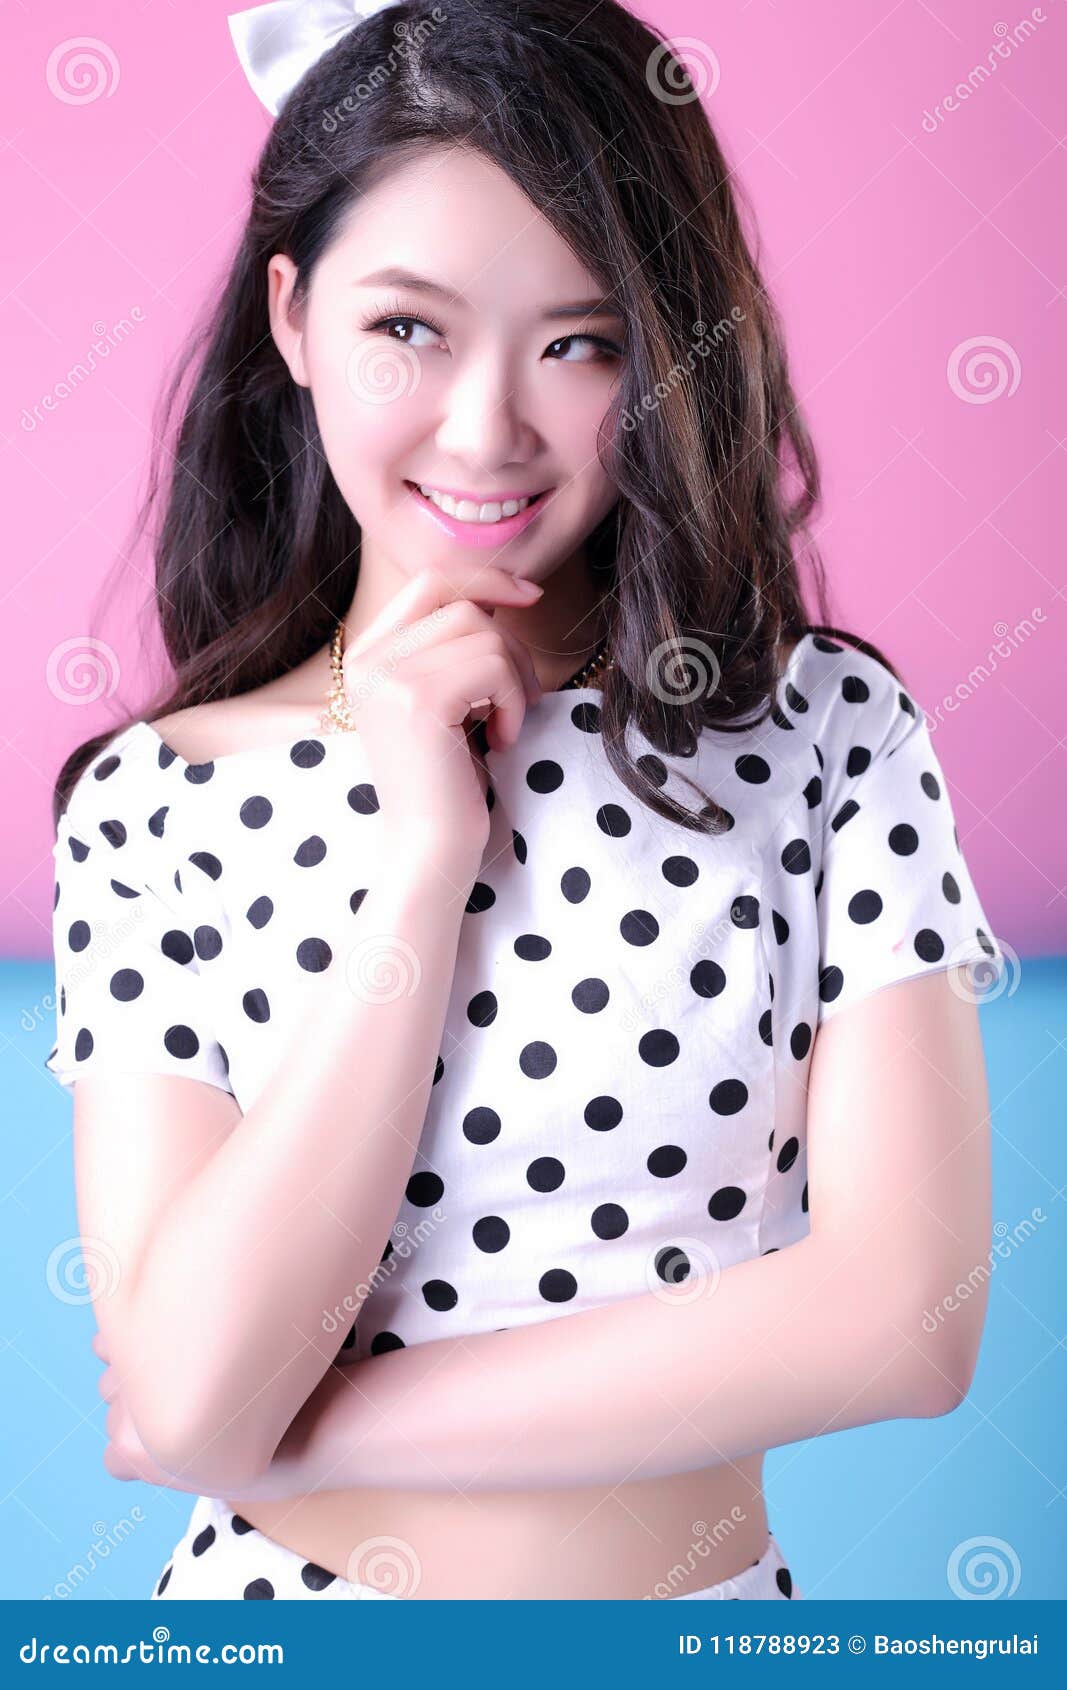 Women cute asian Asian Women